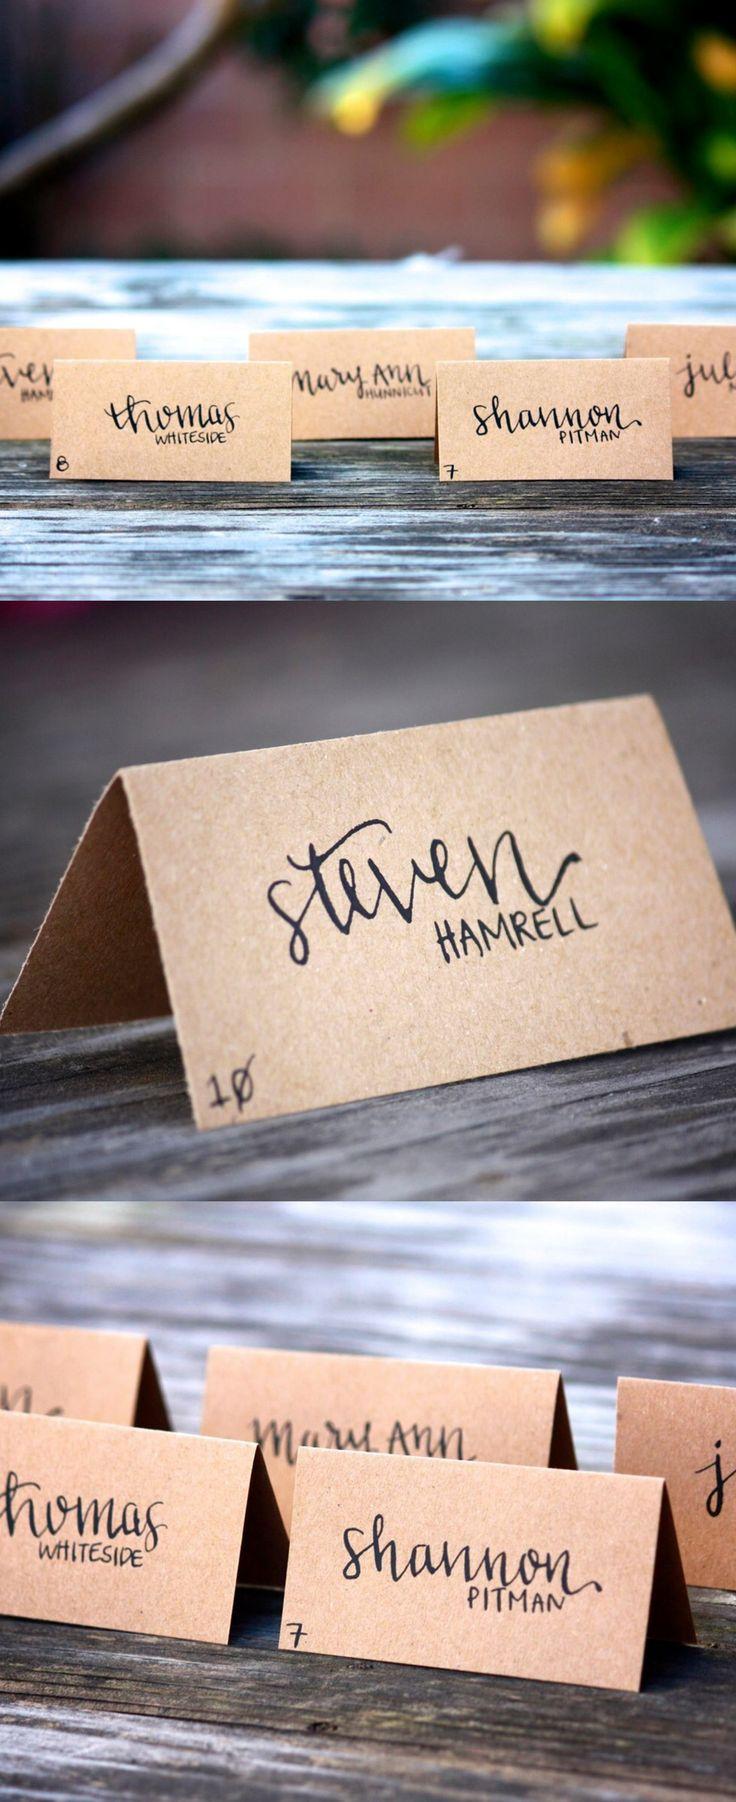 زفاف - Wedding Place Cards - Tent Fold - Escort Card - Black Calligraphy With Kraft Paper - Dinner Party - Name Tag